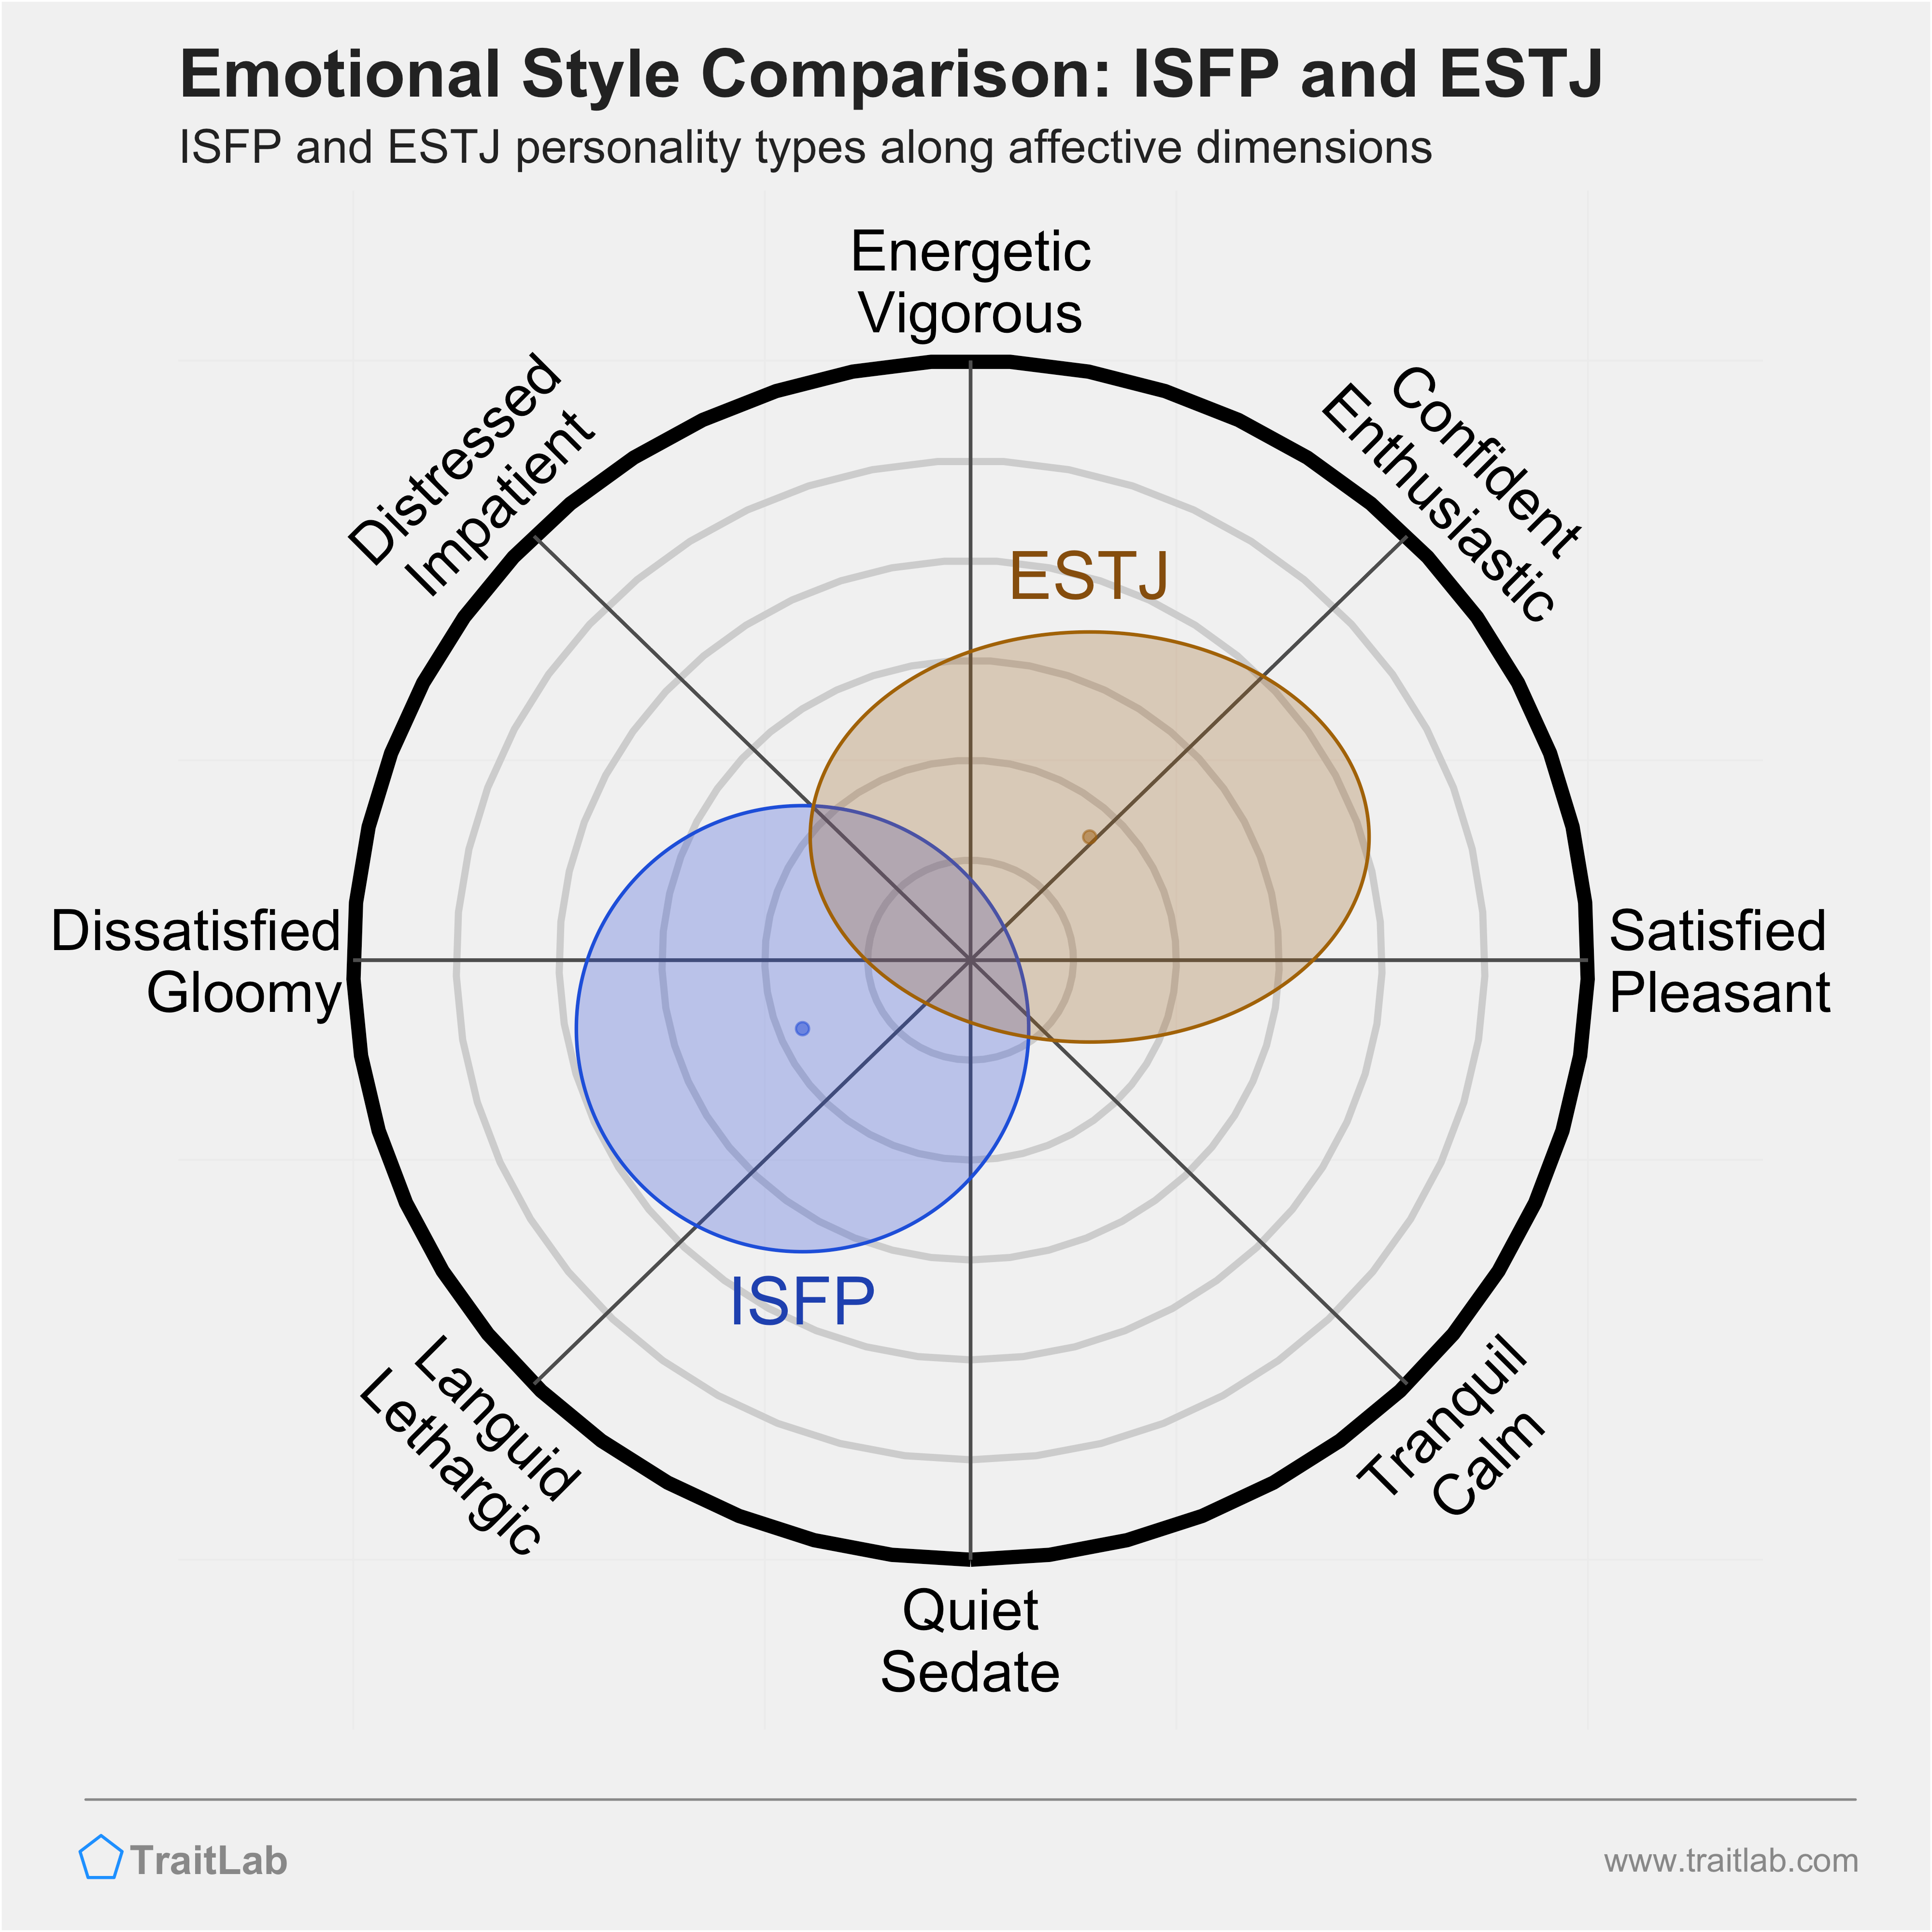 ISFP and ESTJ comparison across emotional (affective) dimensions